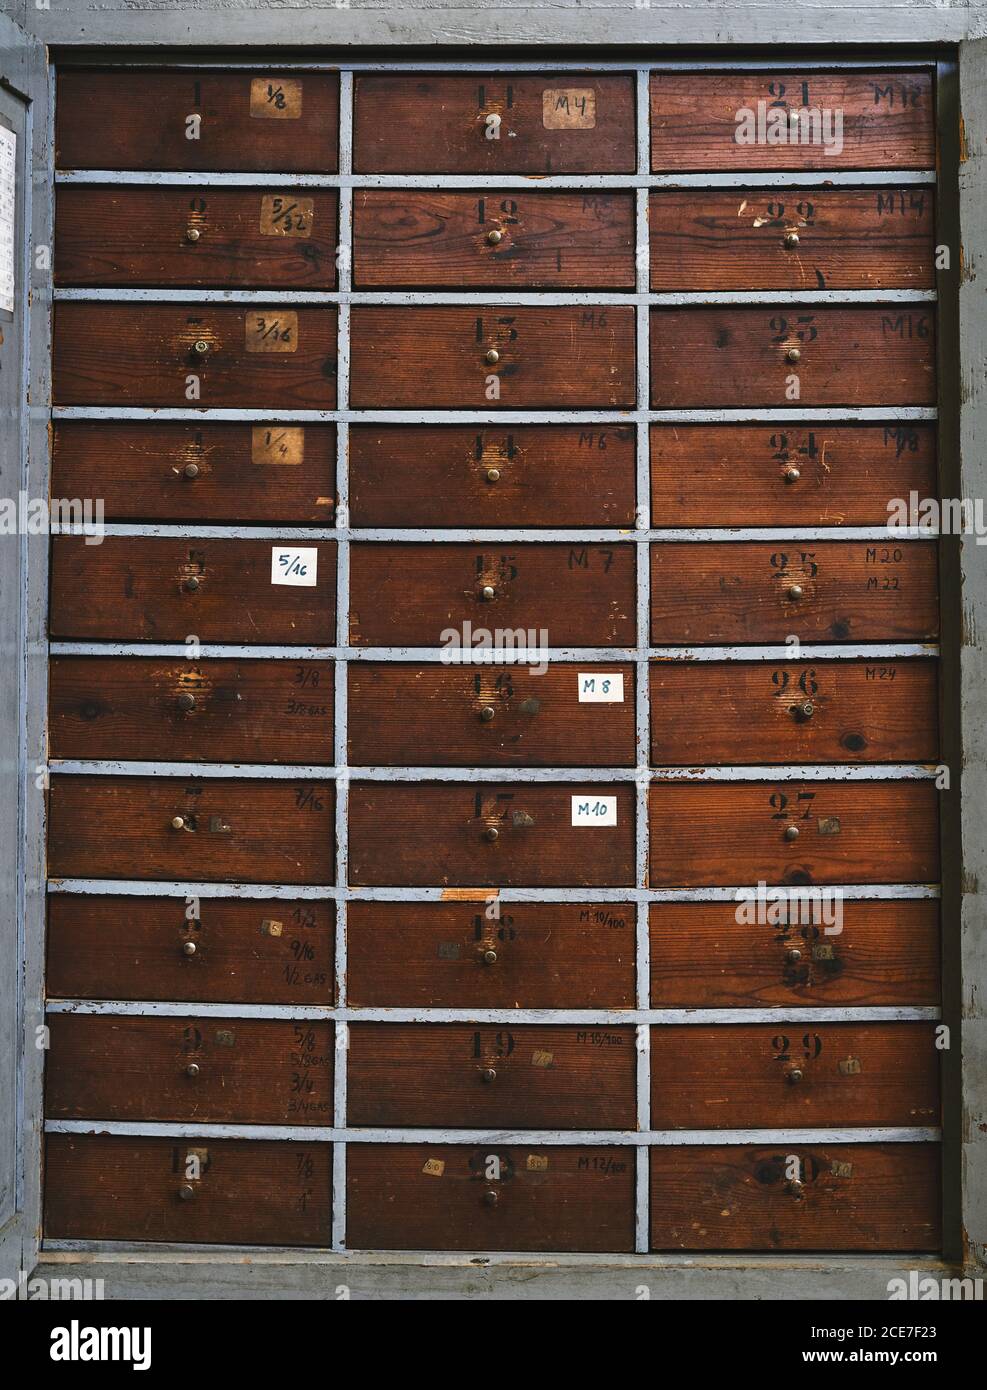 Archiv, das identische dunkelbraune Holzschubladen mit Zahlen darstellt Unebene Oberfläche mit Flecken in der Werkstatt Stockfoto